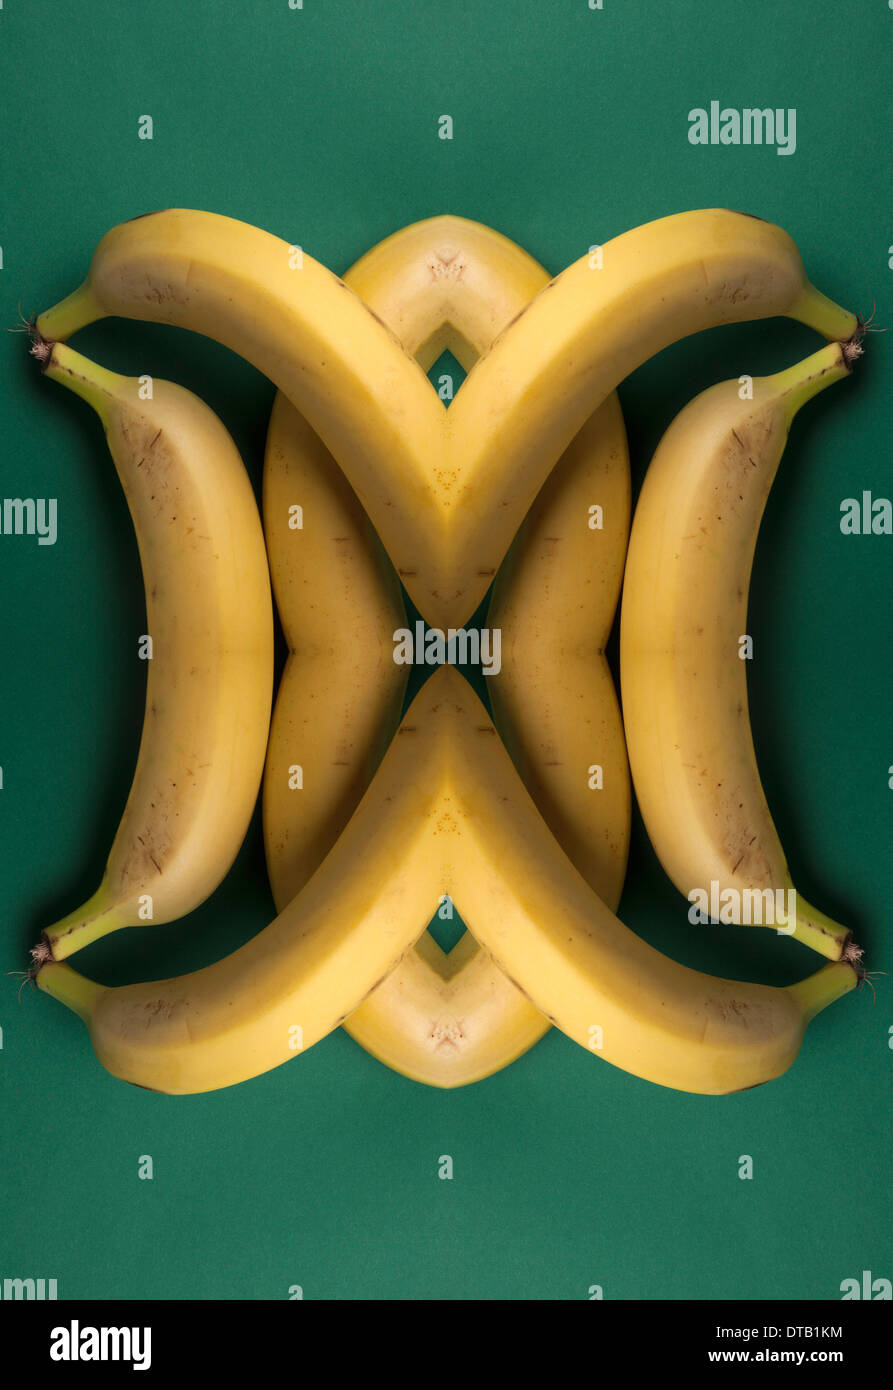 Eine digitale Zusammensetzung der gespiegelten Bildern einer Anordnung von Bananen Stockfoto